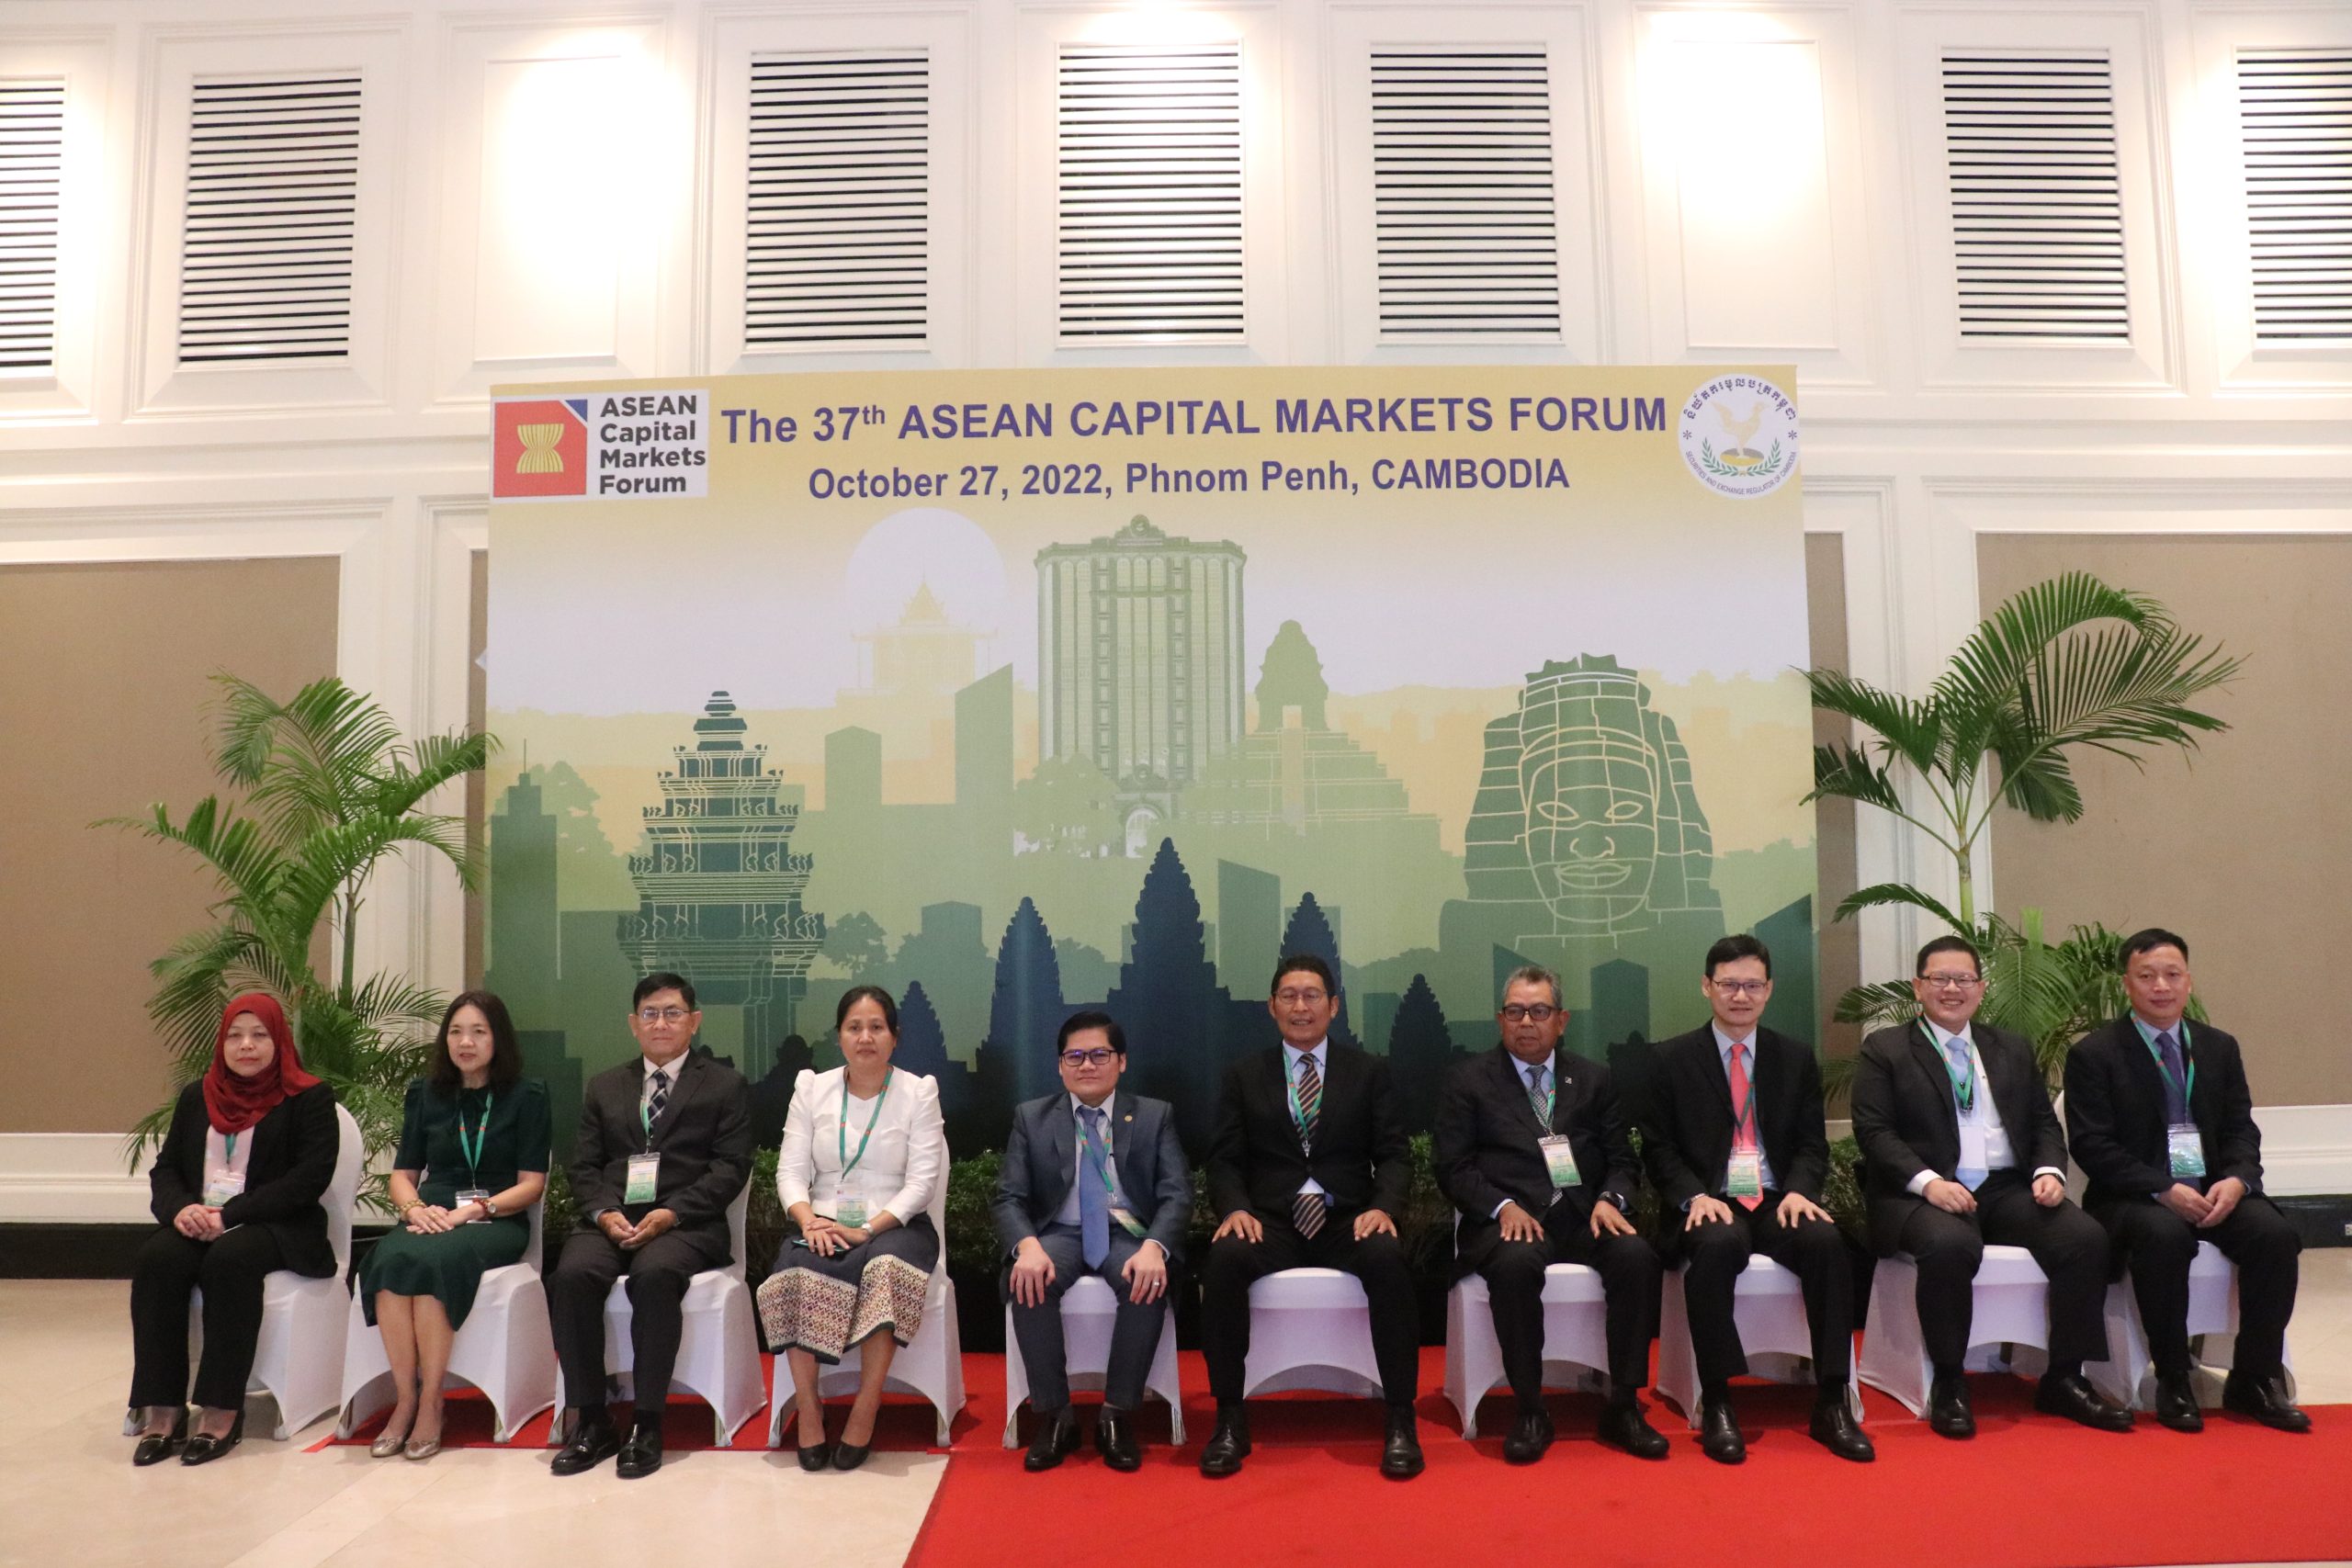 37th ASEAN Capital Market Forum, 27 October 2022, Phnom Penh, Cambodia.